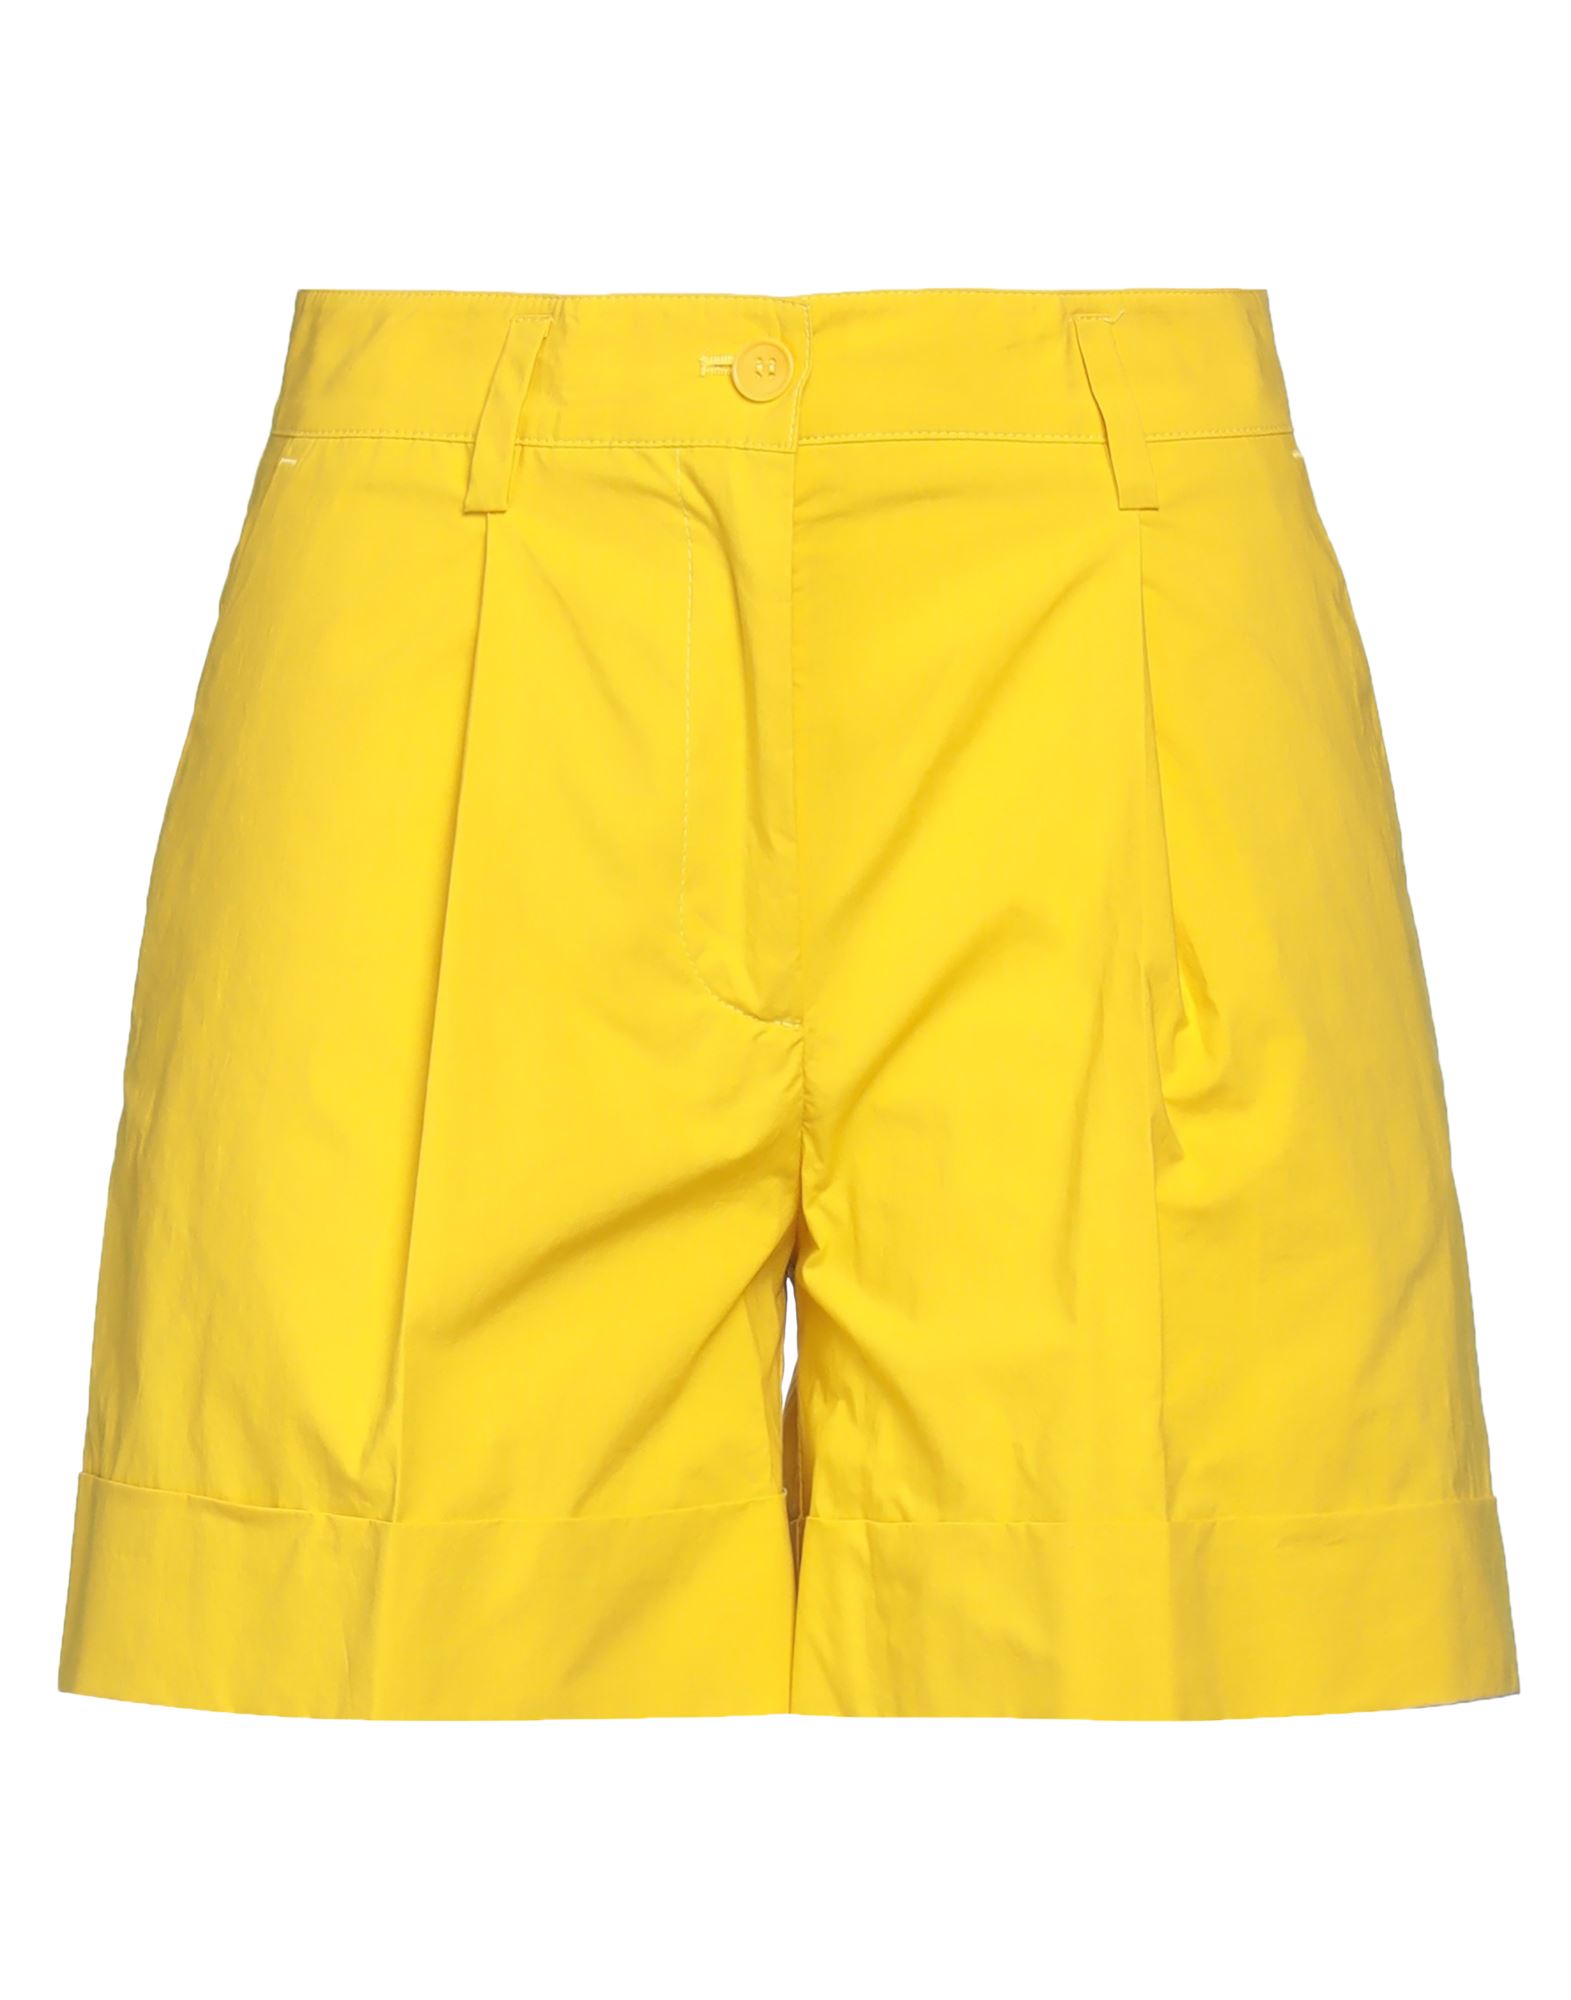 P.a.r.o.s.h P. A.r. O.s. H. Woman Shorts & Bermuda Shorts Yellow Size Xs Cotton